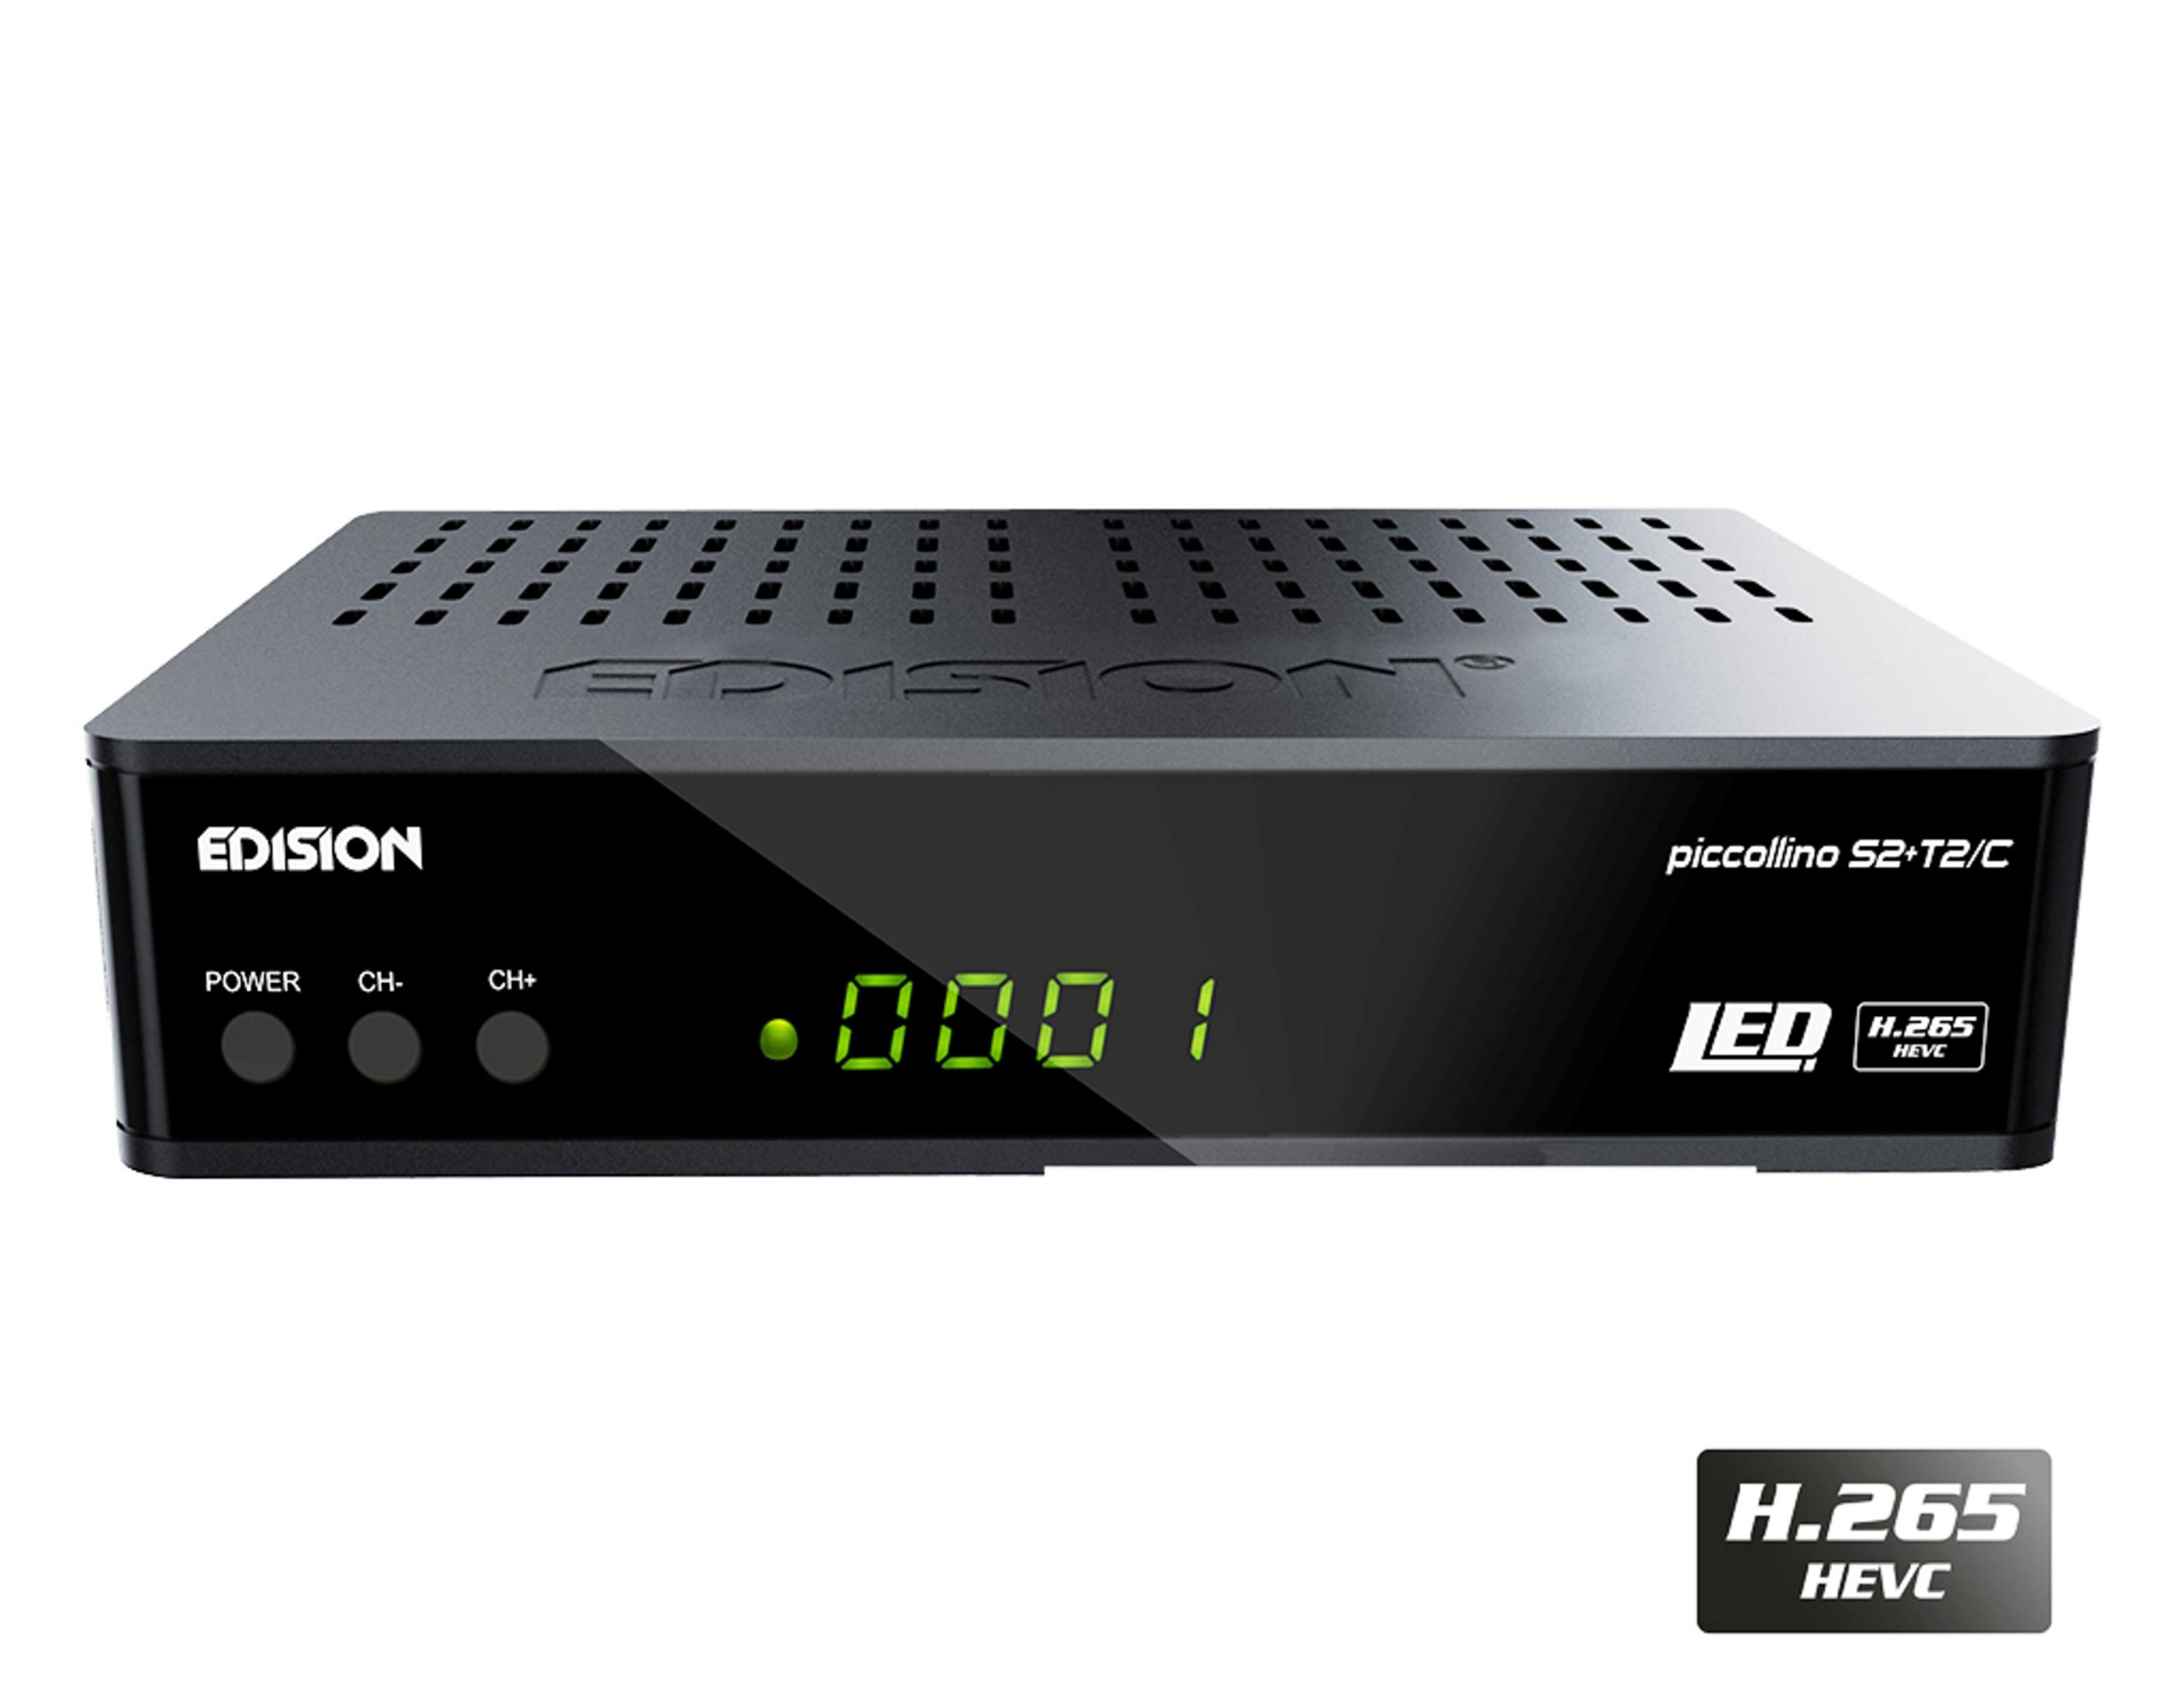 (HDTV, EDISION Tuner, Schwarz) DVB-S2, Receiver PICOLLINO (H.265), DVB-T2/C DVB-T, DVB-T2 DVB-S2 3in1 Twin DVB-S, HD PVR-Funktion, HEVC, DVB-C2, DVB-C, LED